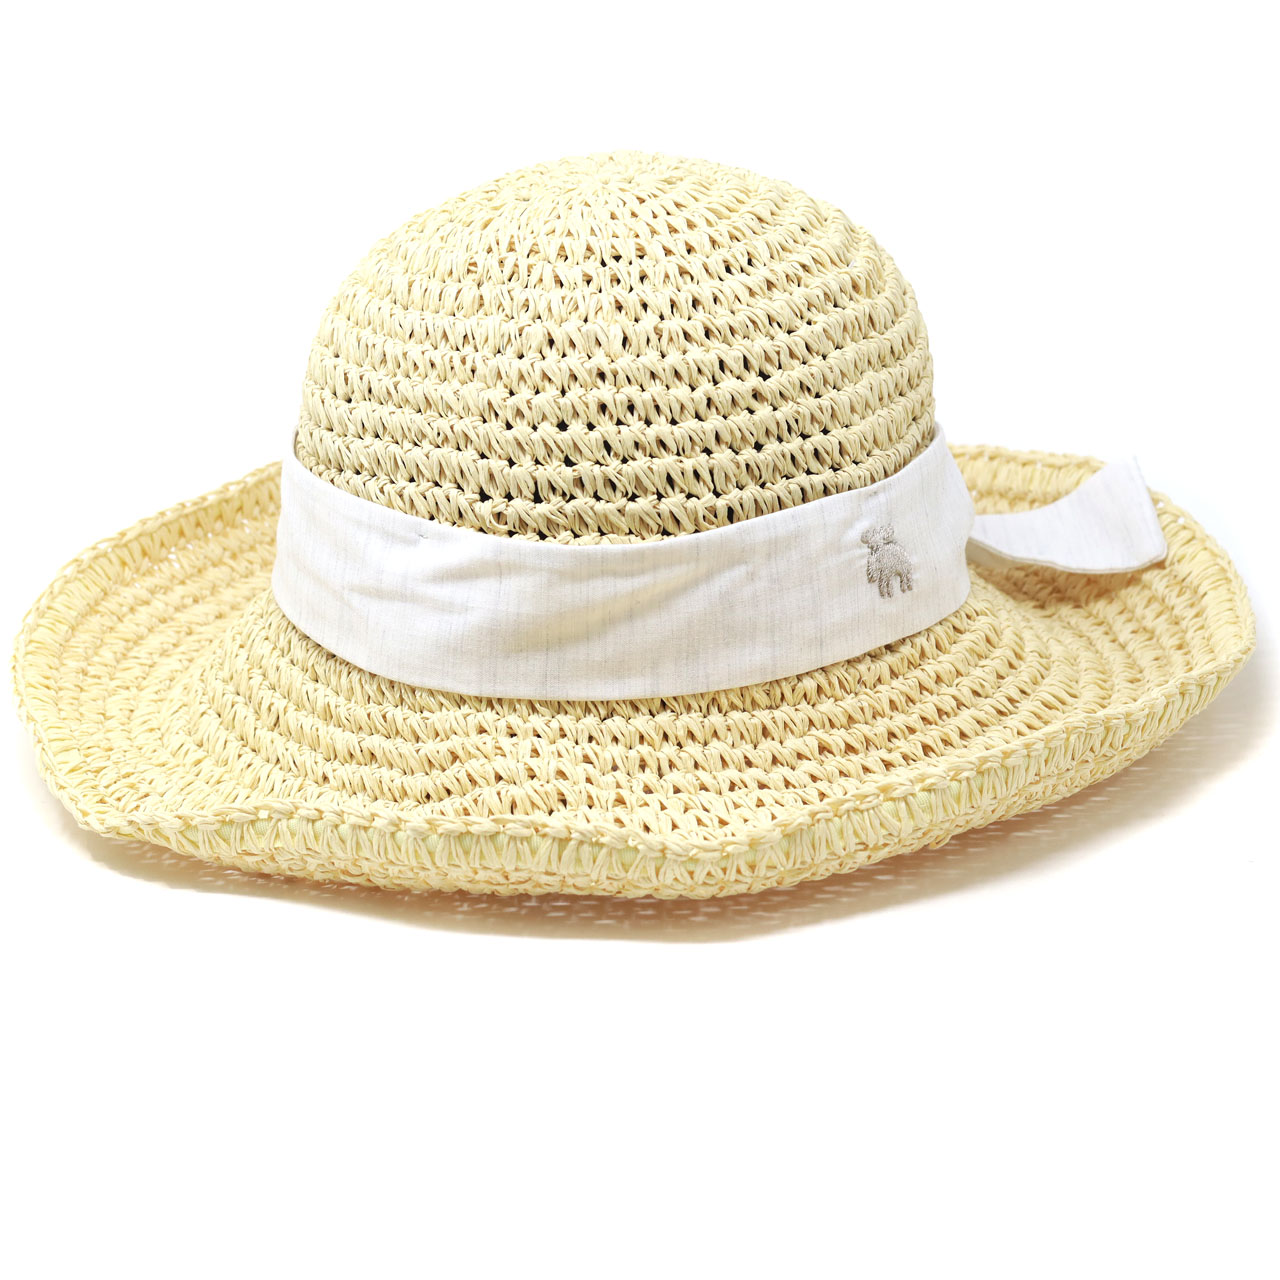 ストローハット レディース 細編み ペーパー リボン付 夏の帽子 